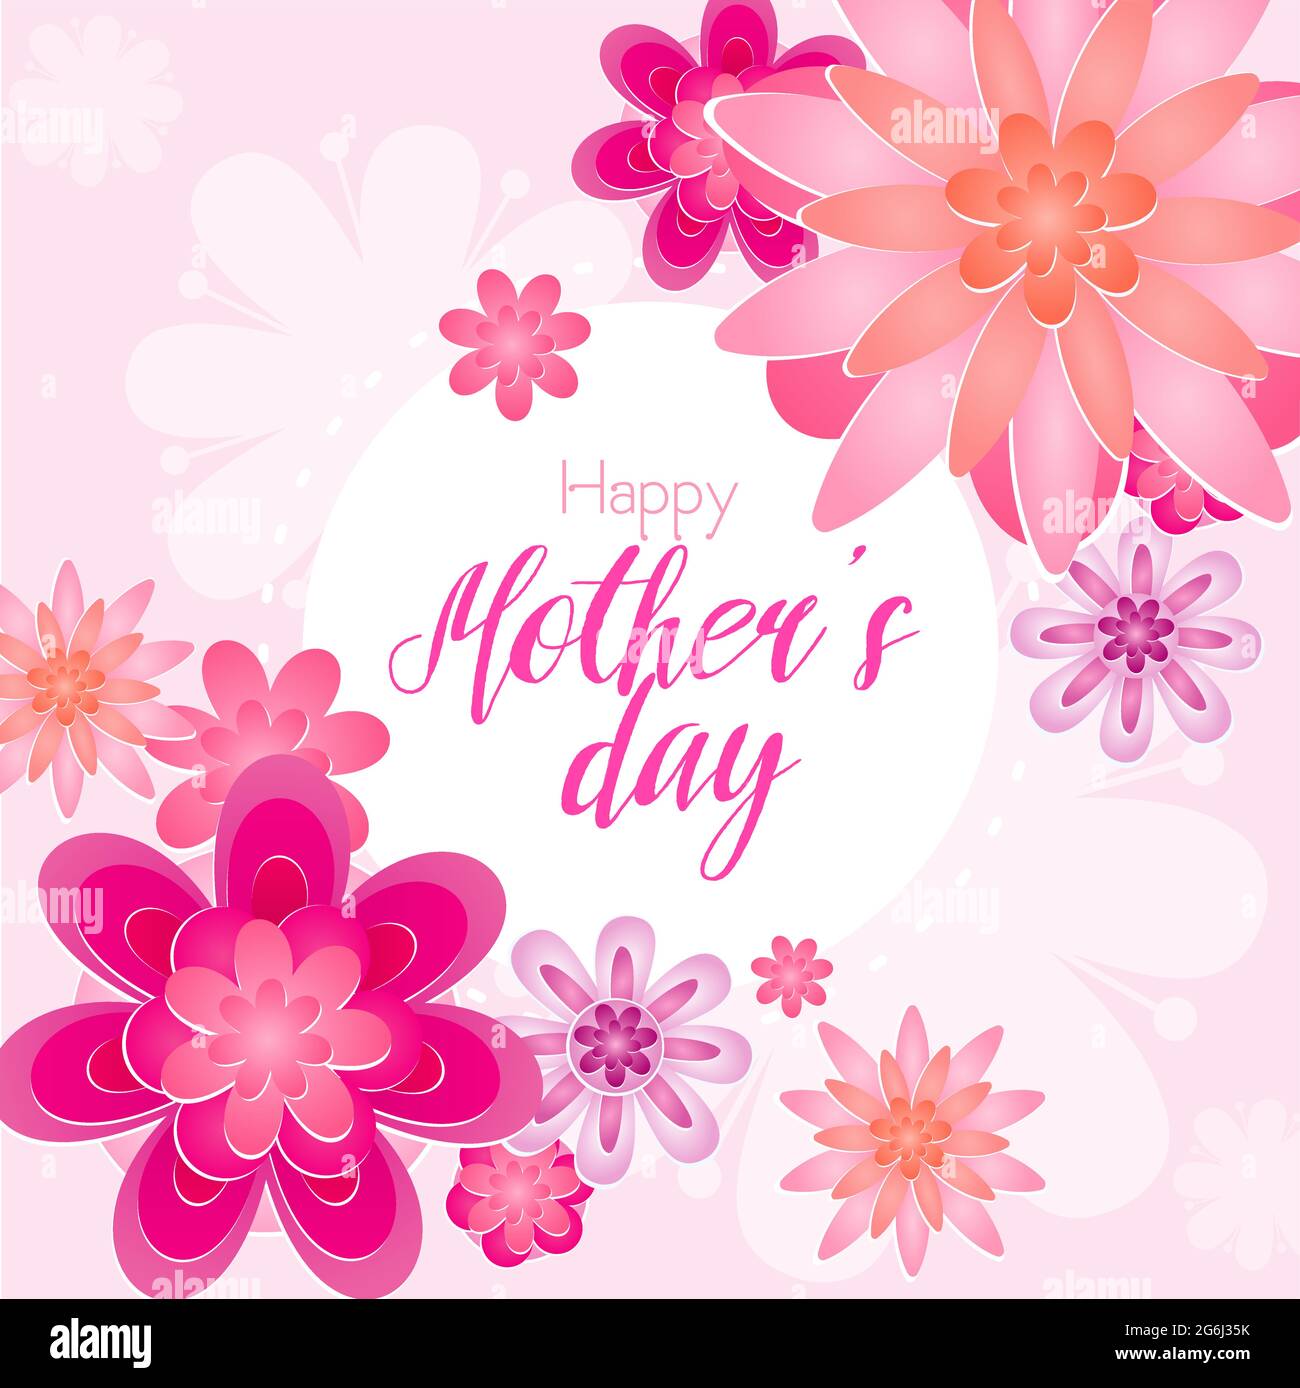 Ilustración vectorial de la hermosa tarjeta de felicitación del día de la madre con flores en flor de color rosa claro. Ilustración del Vector